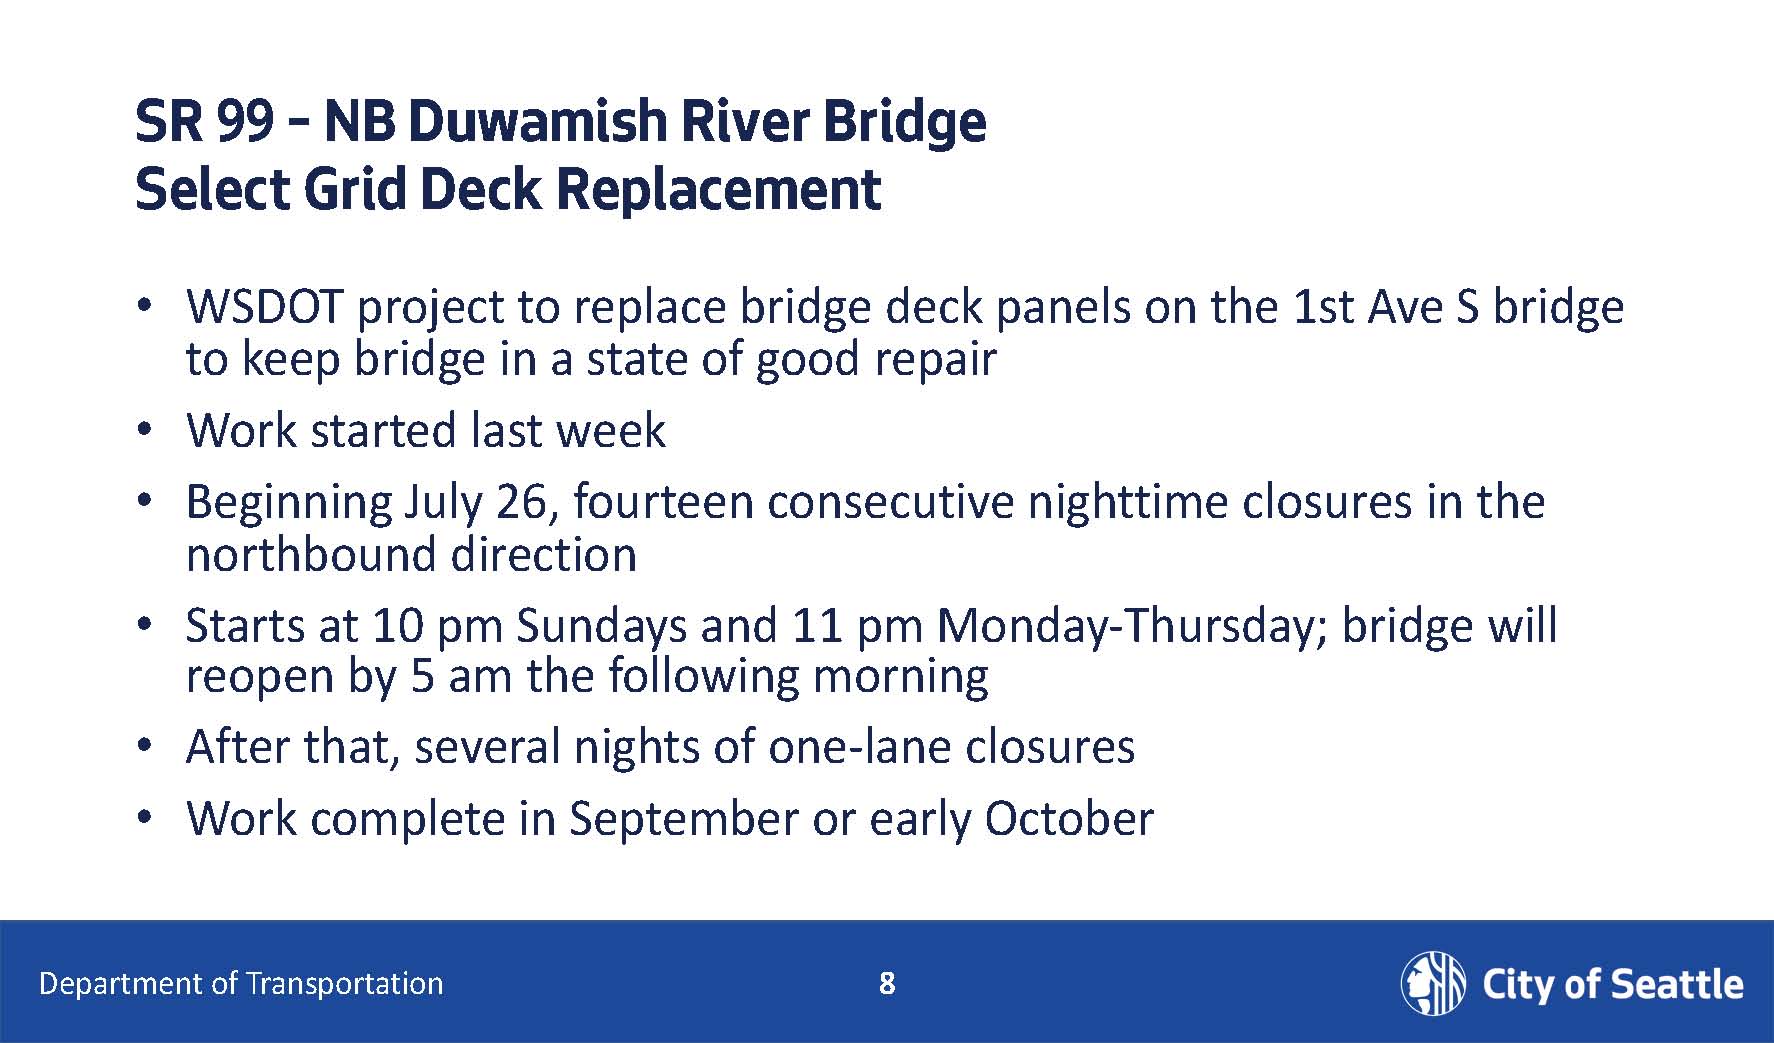 NB Duwamish River Bridge repairs